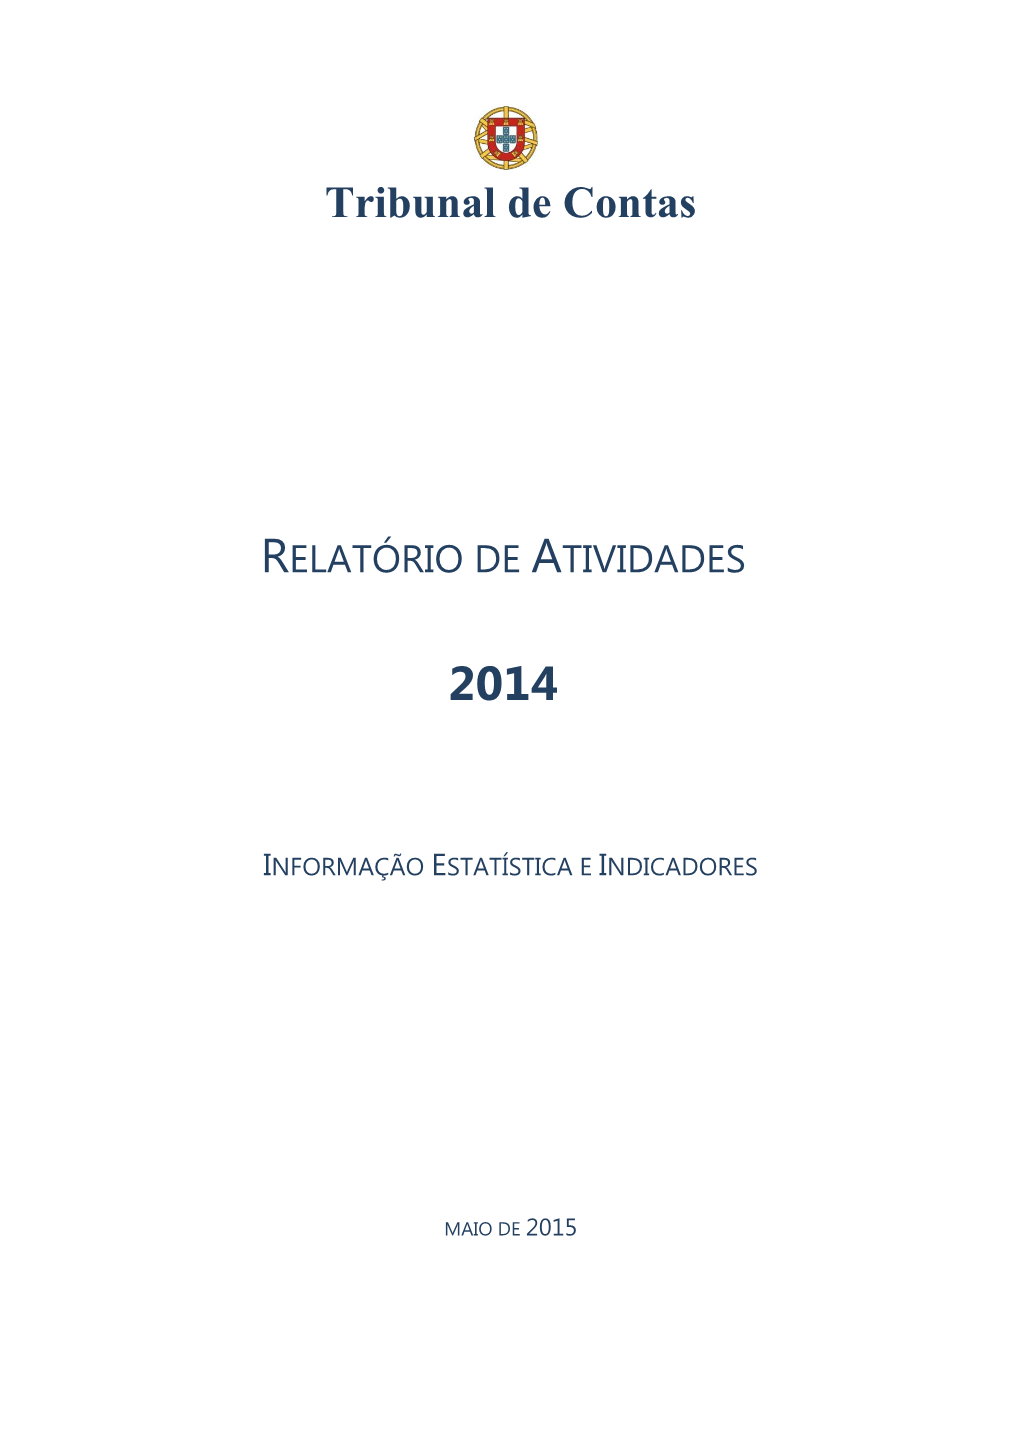 2. Relatório De Atividades 2014